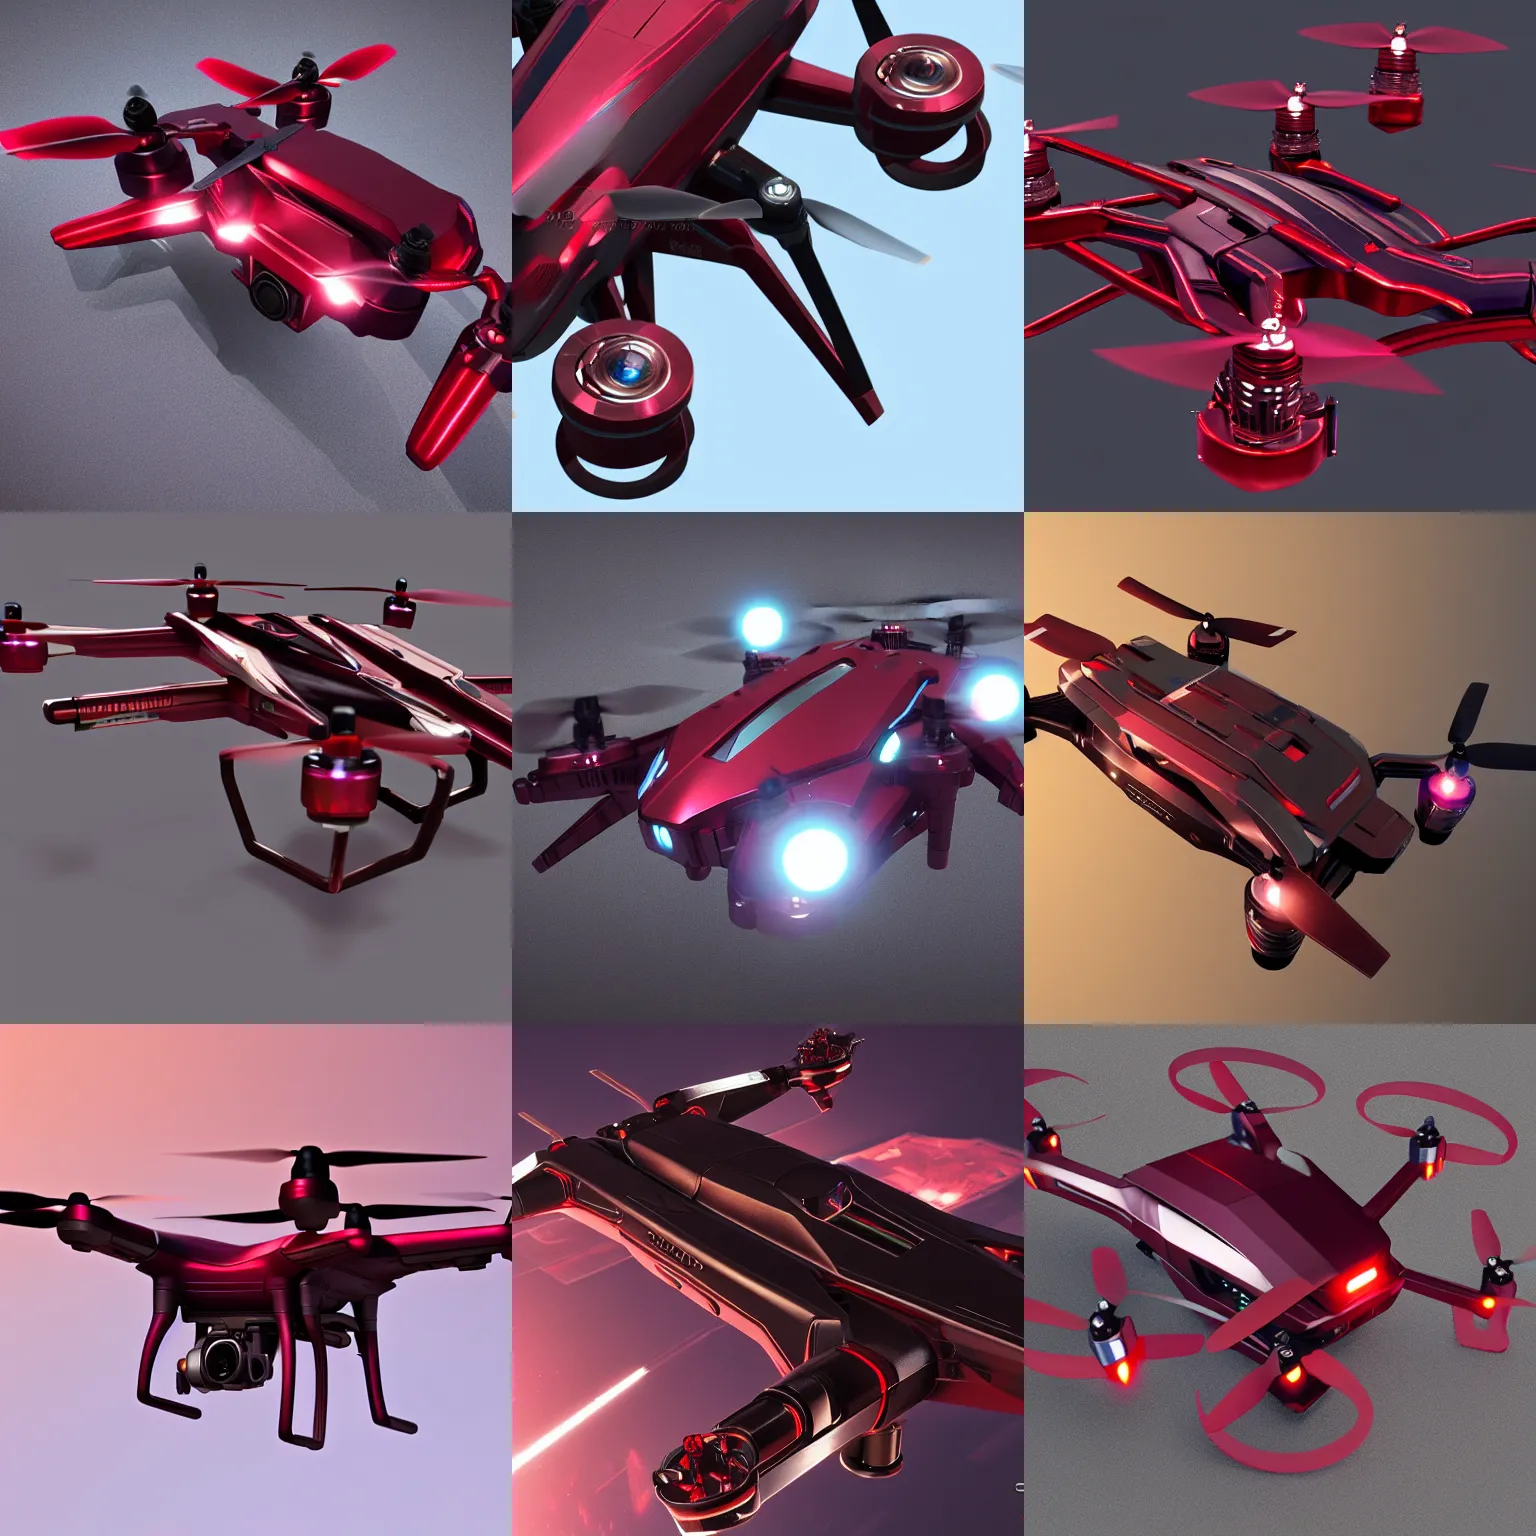 Drone Design Ideas : Cool concept drone. Like the copper accents